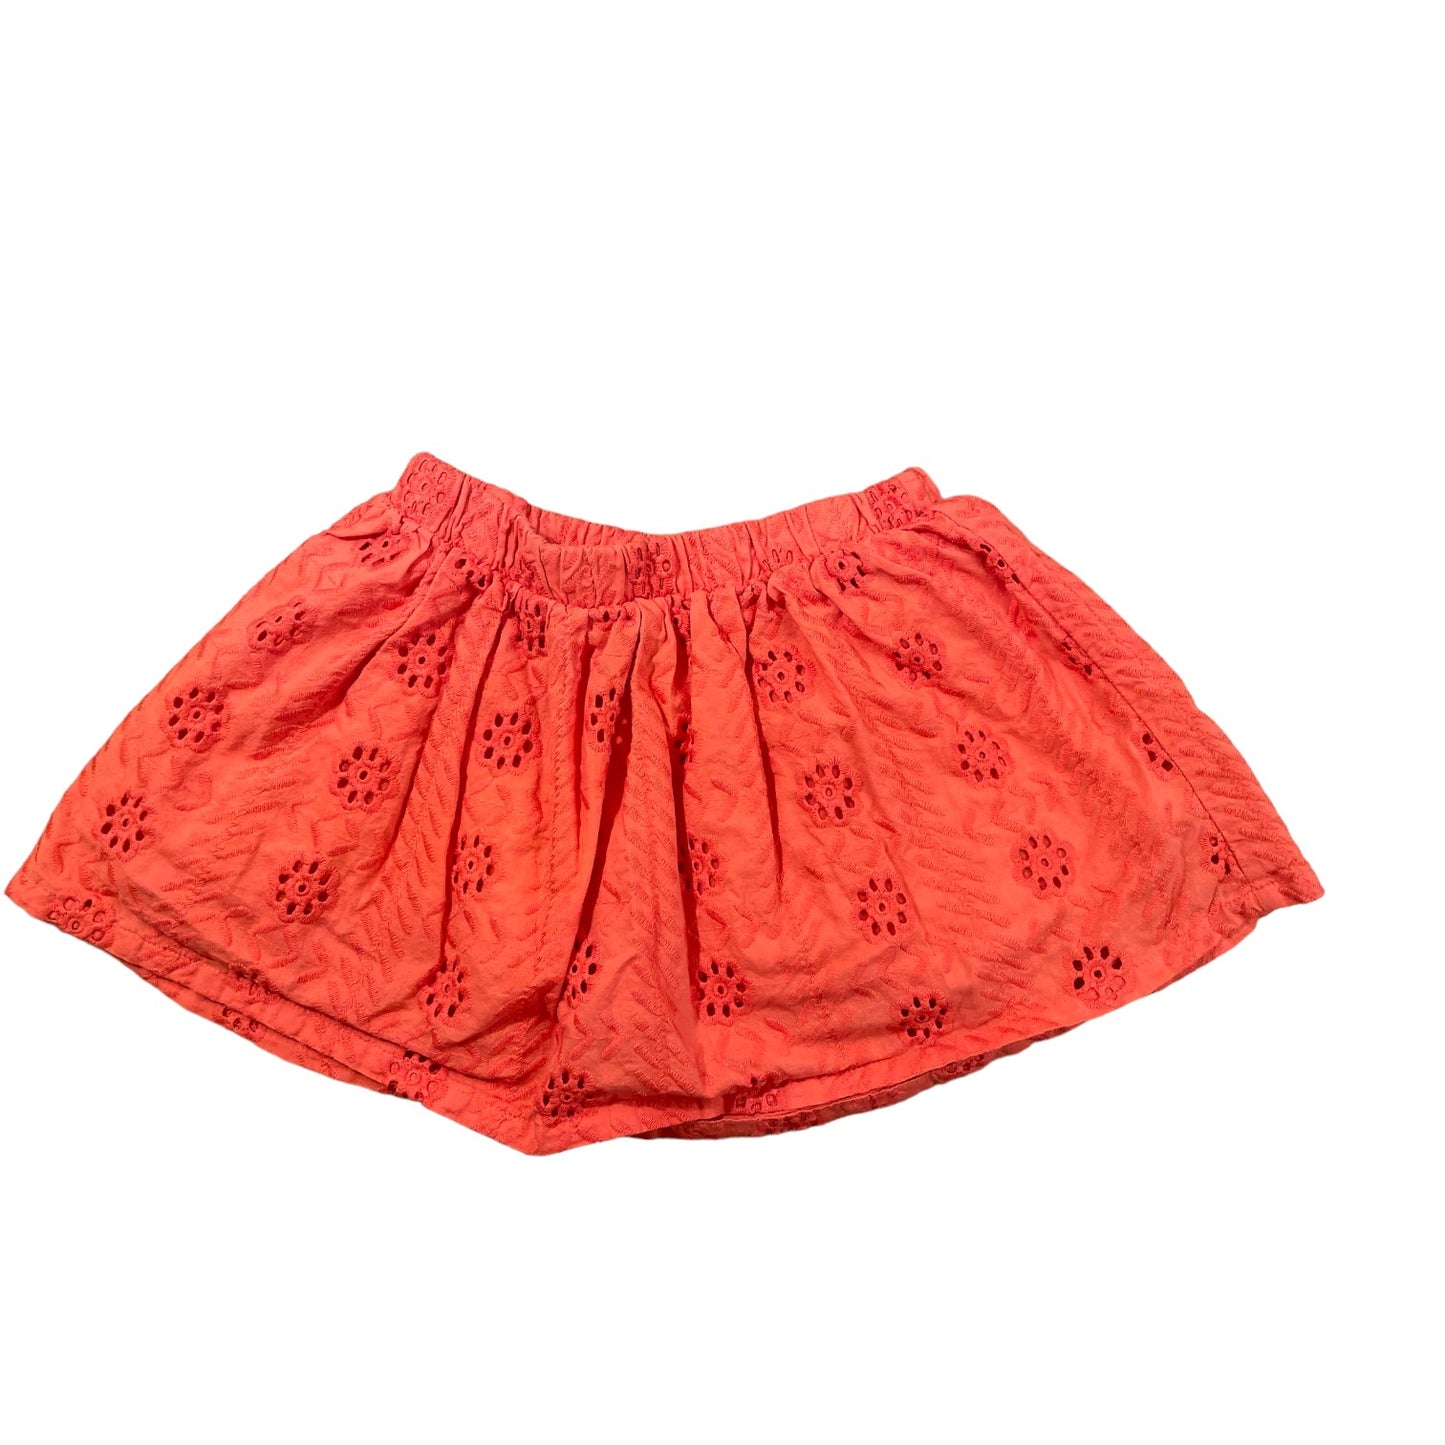 OshKosh Genuine Kids Girls Skirt Size 4T